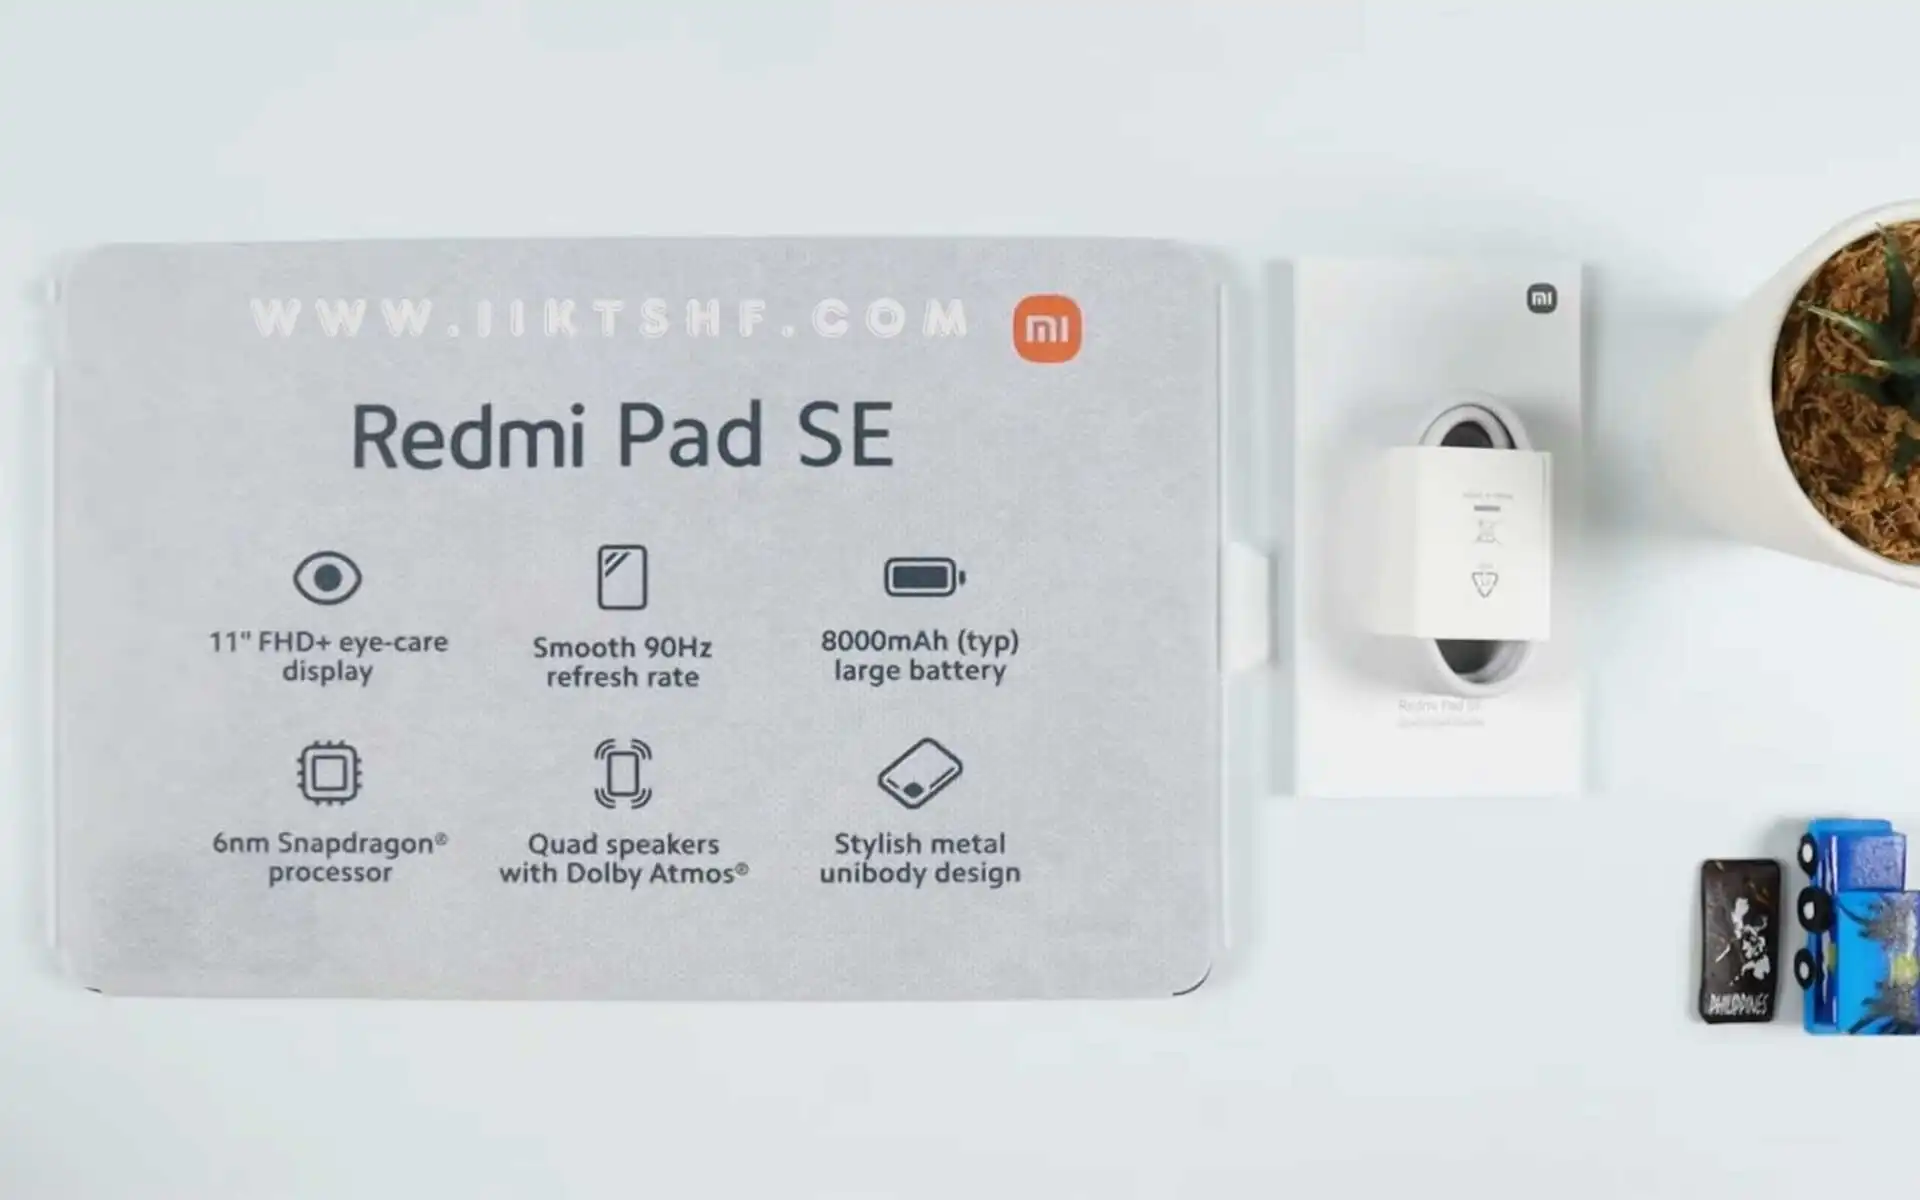 إعلان شركة شاومي عن حاسوبها اللوحي Redmi Pad SE ومواصفاته